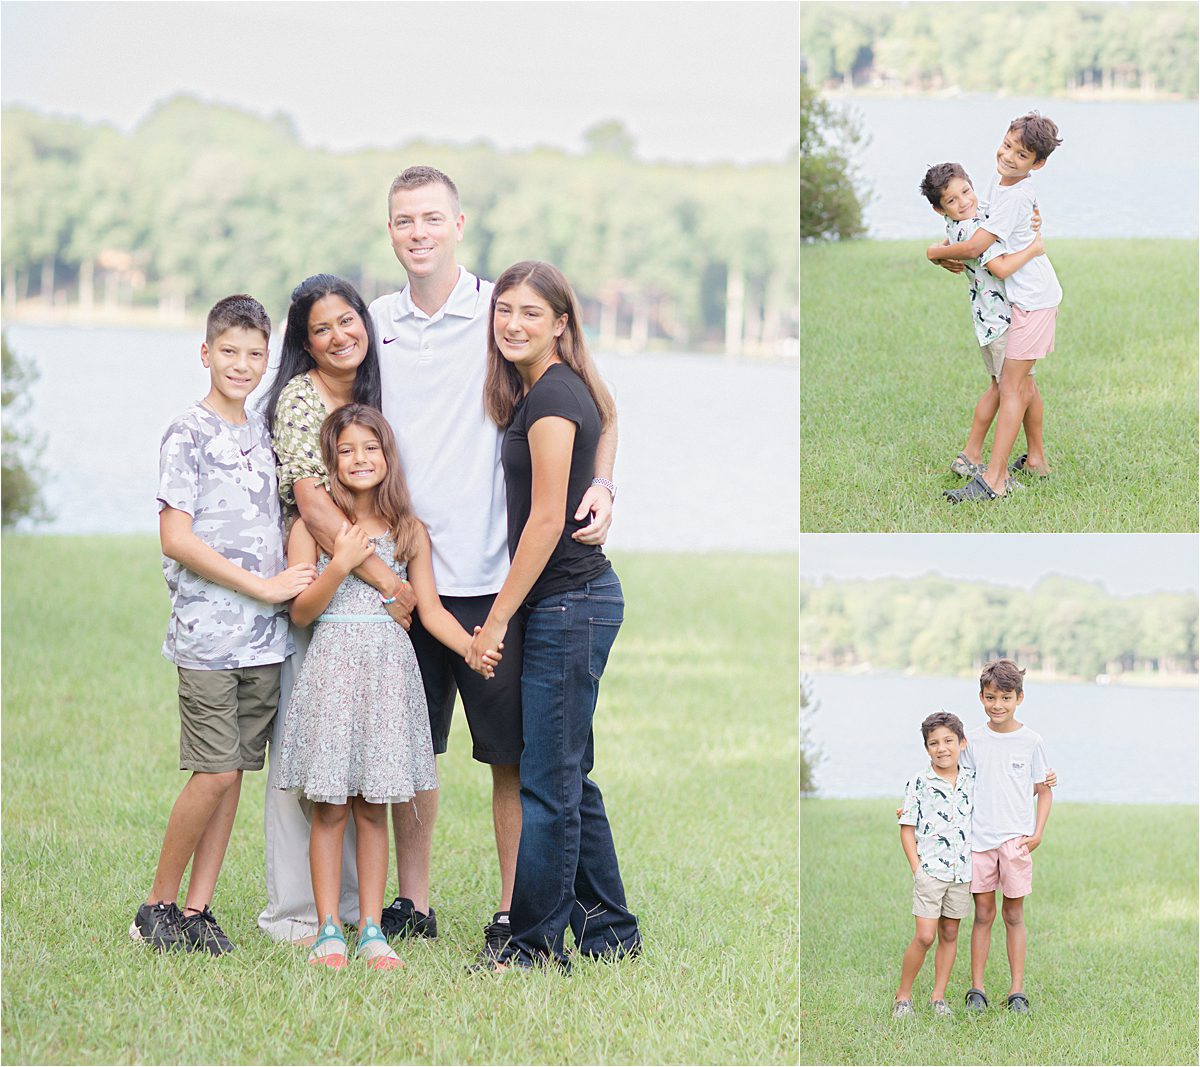 Family photography at Lake Oconee.